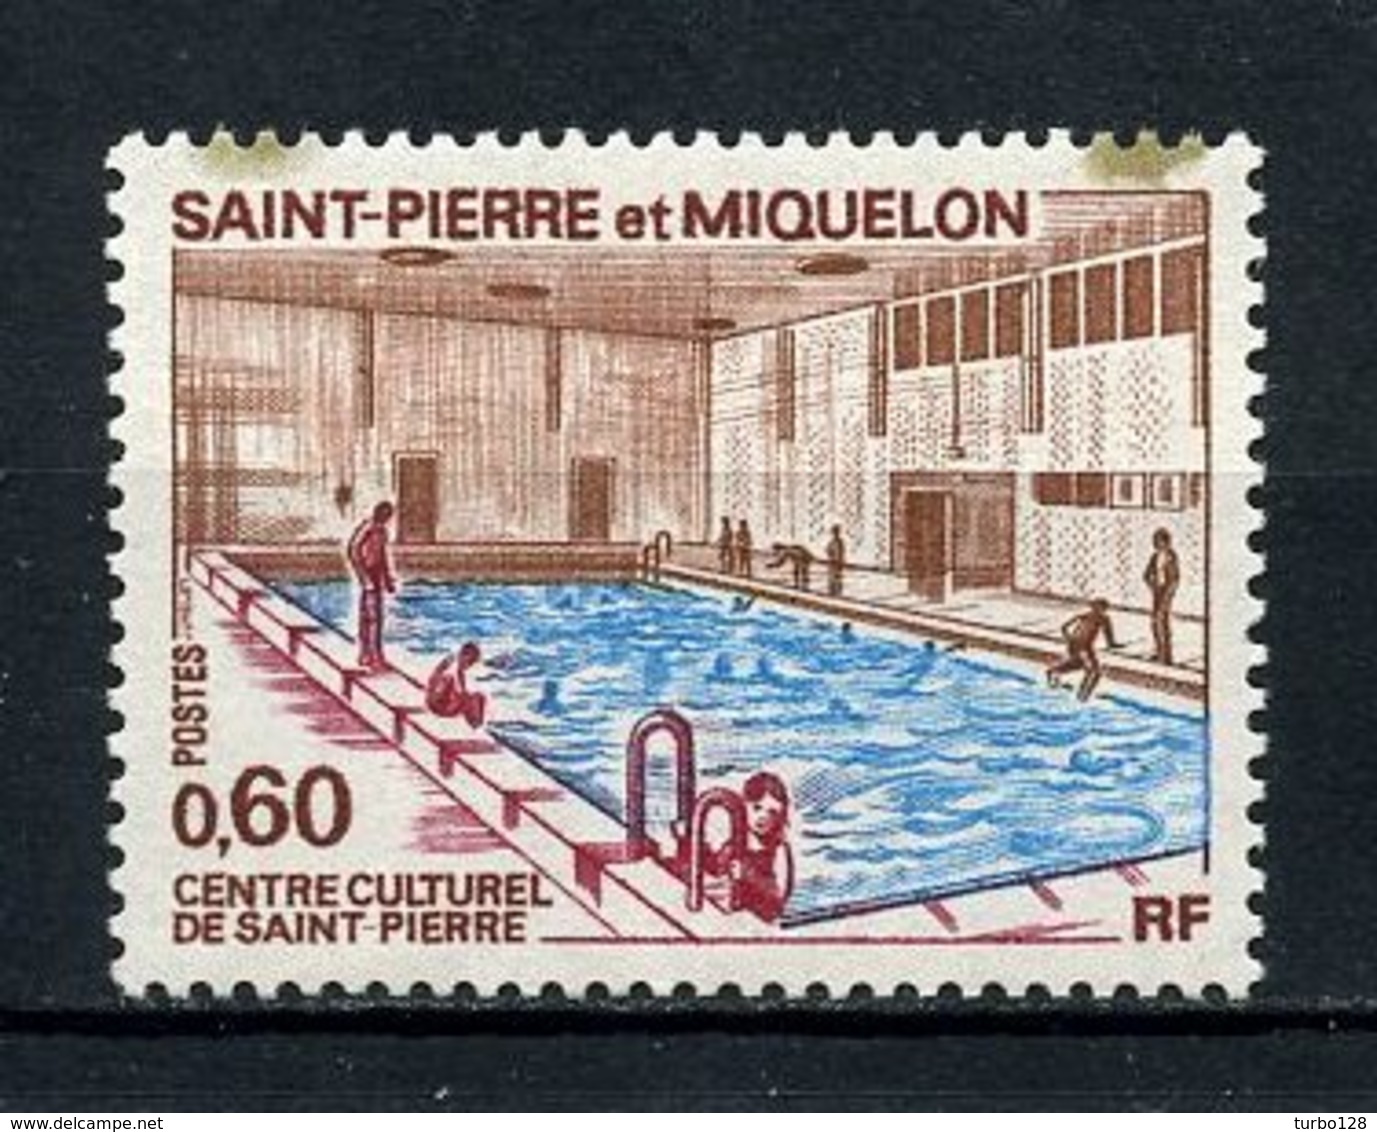 SPM MIQUELON 1973 N° 431 ** Neuf MNH Incrustation Dans Le Papier C 6,50 € Centre Culturel Piscine Natation Sports - Unused Stamps